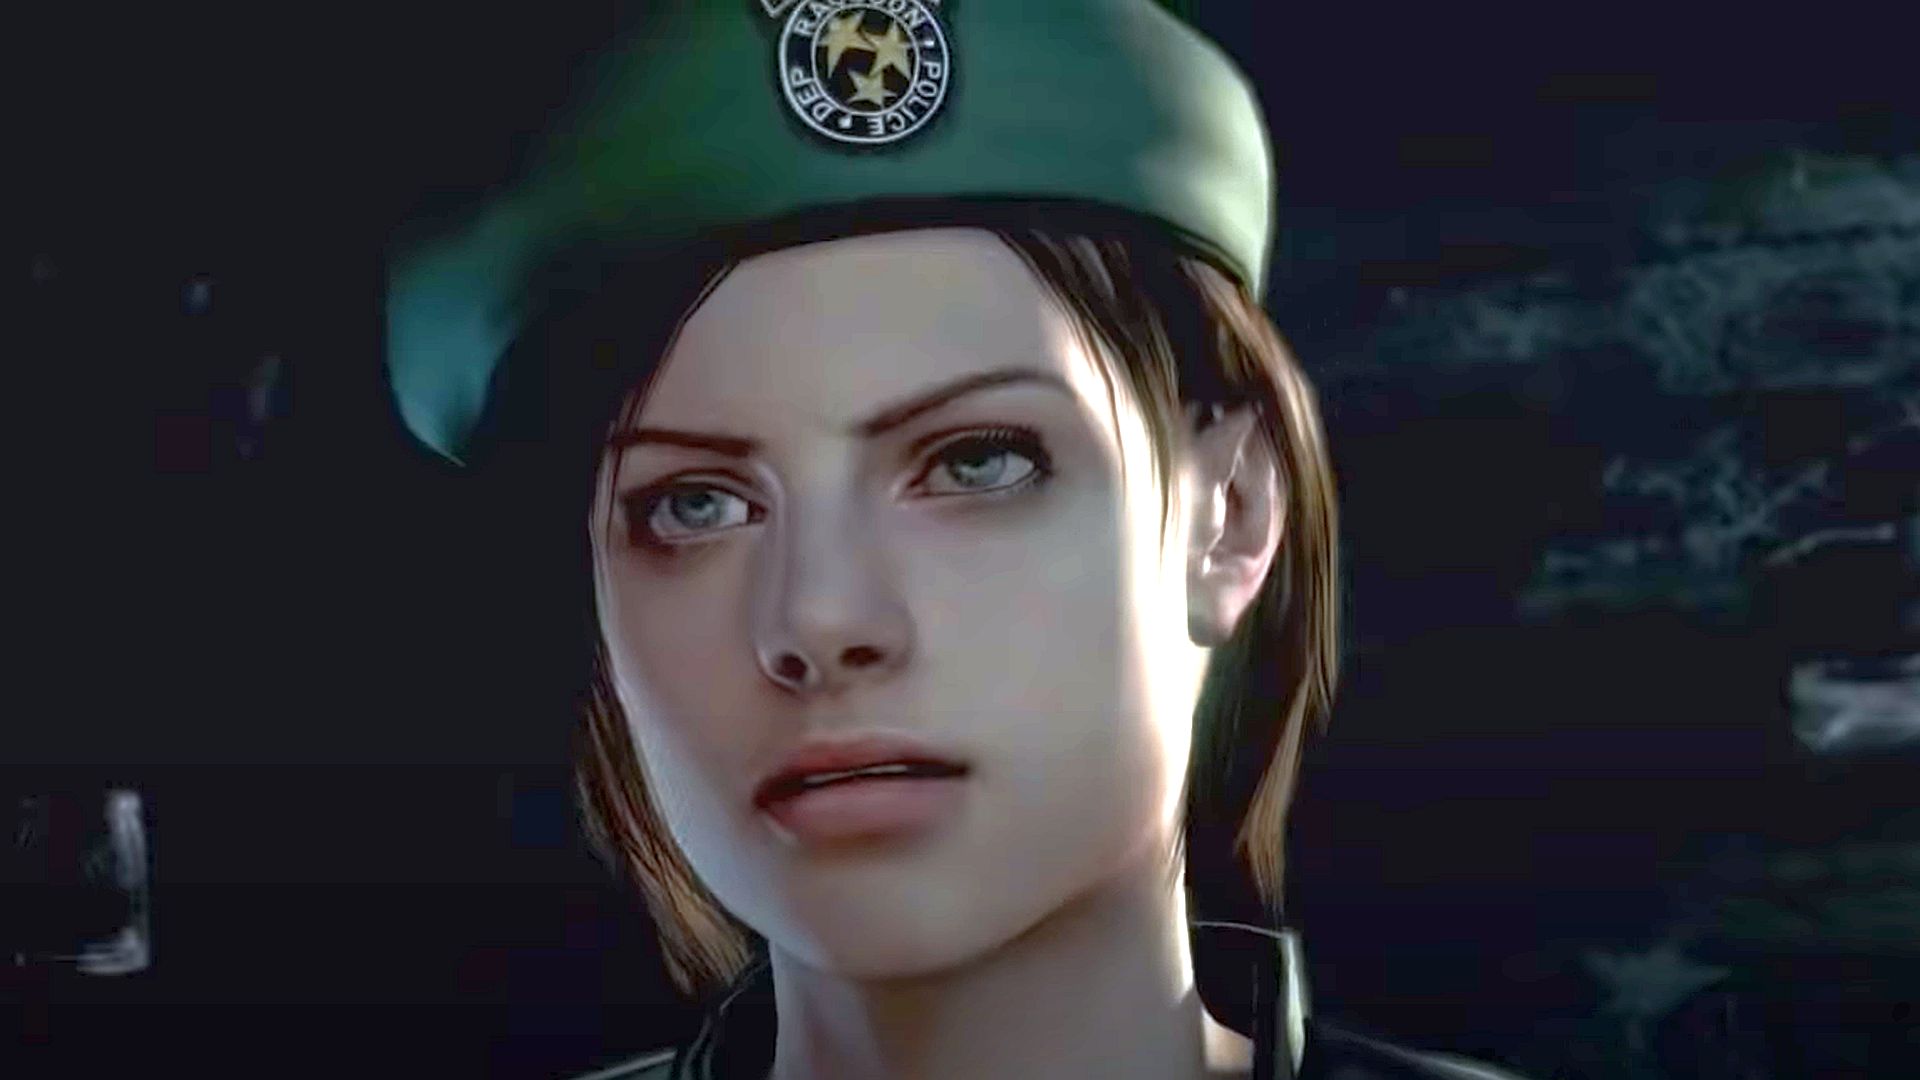 Jill Valentine (Resident Evil 3 Remake) Minecraft Skin